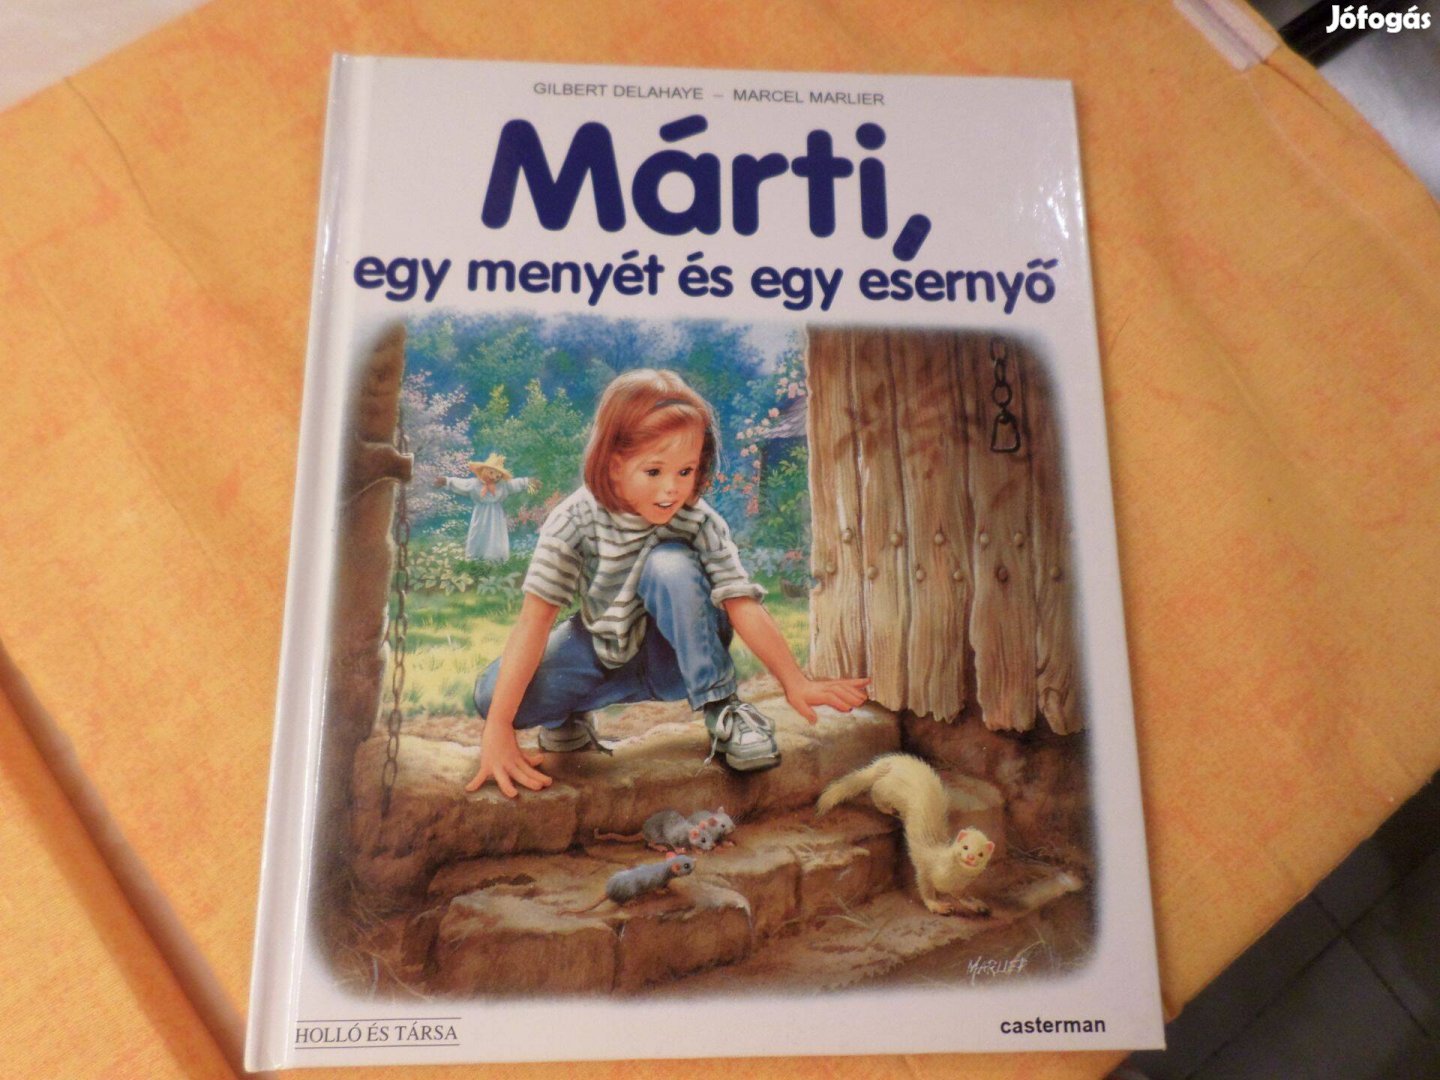 G. Delahaye - M. Marlier Márti egy menyét - és egy esern, Gyermekkönyv